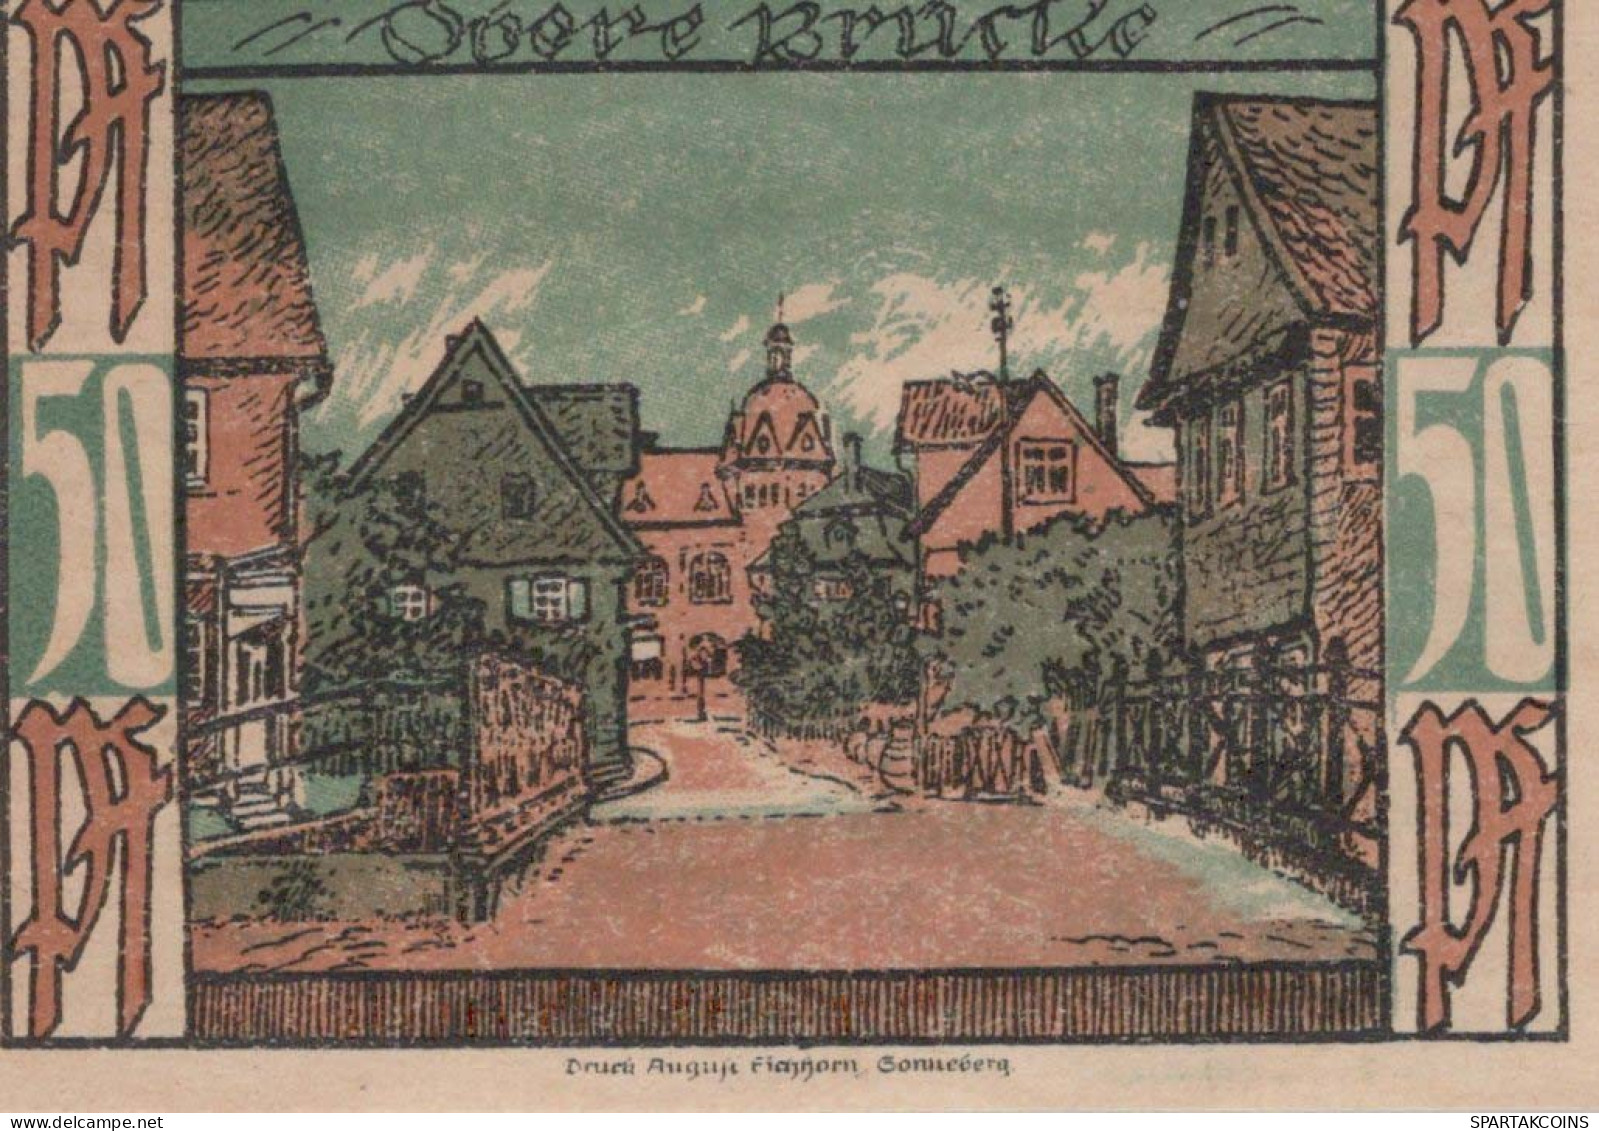 50 PFENNIG 1921 Stadt OBERLIND Thuringia DEUTSCHLAND Notgeld Banknote #PF409 - [11] Local Banknote Issues